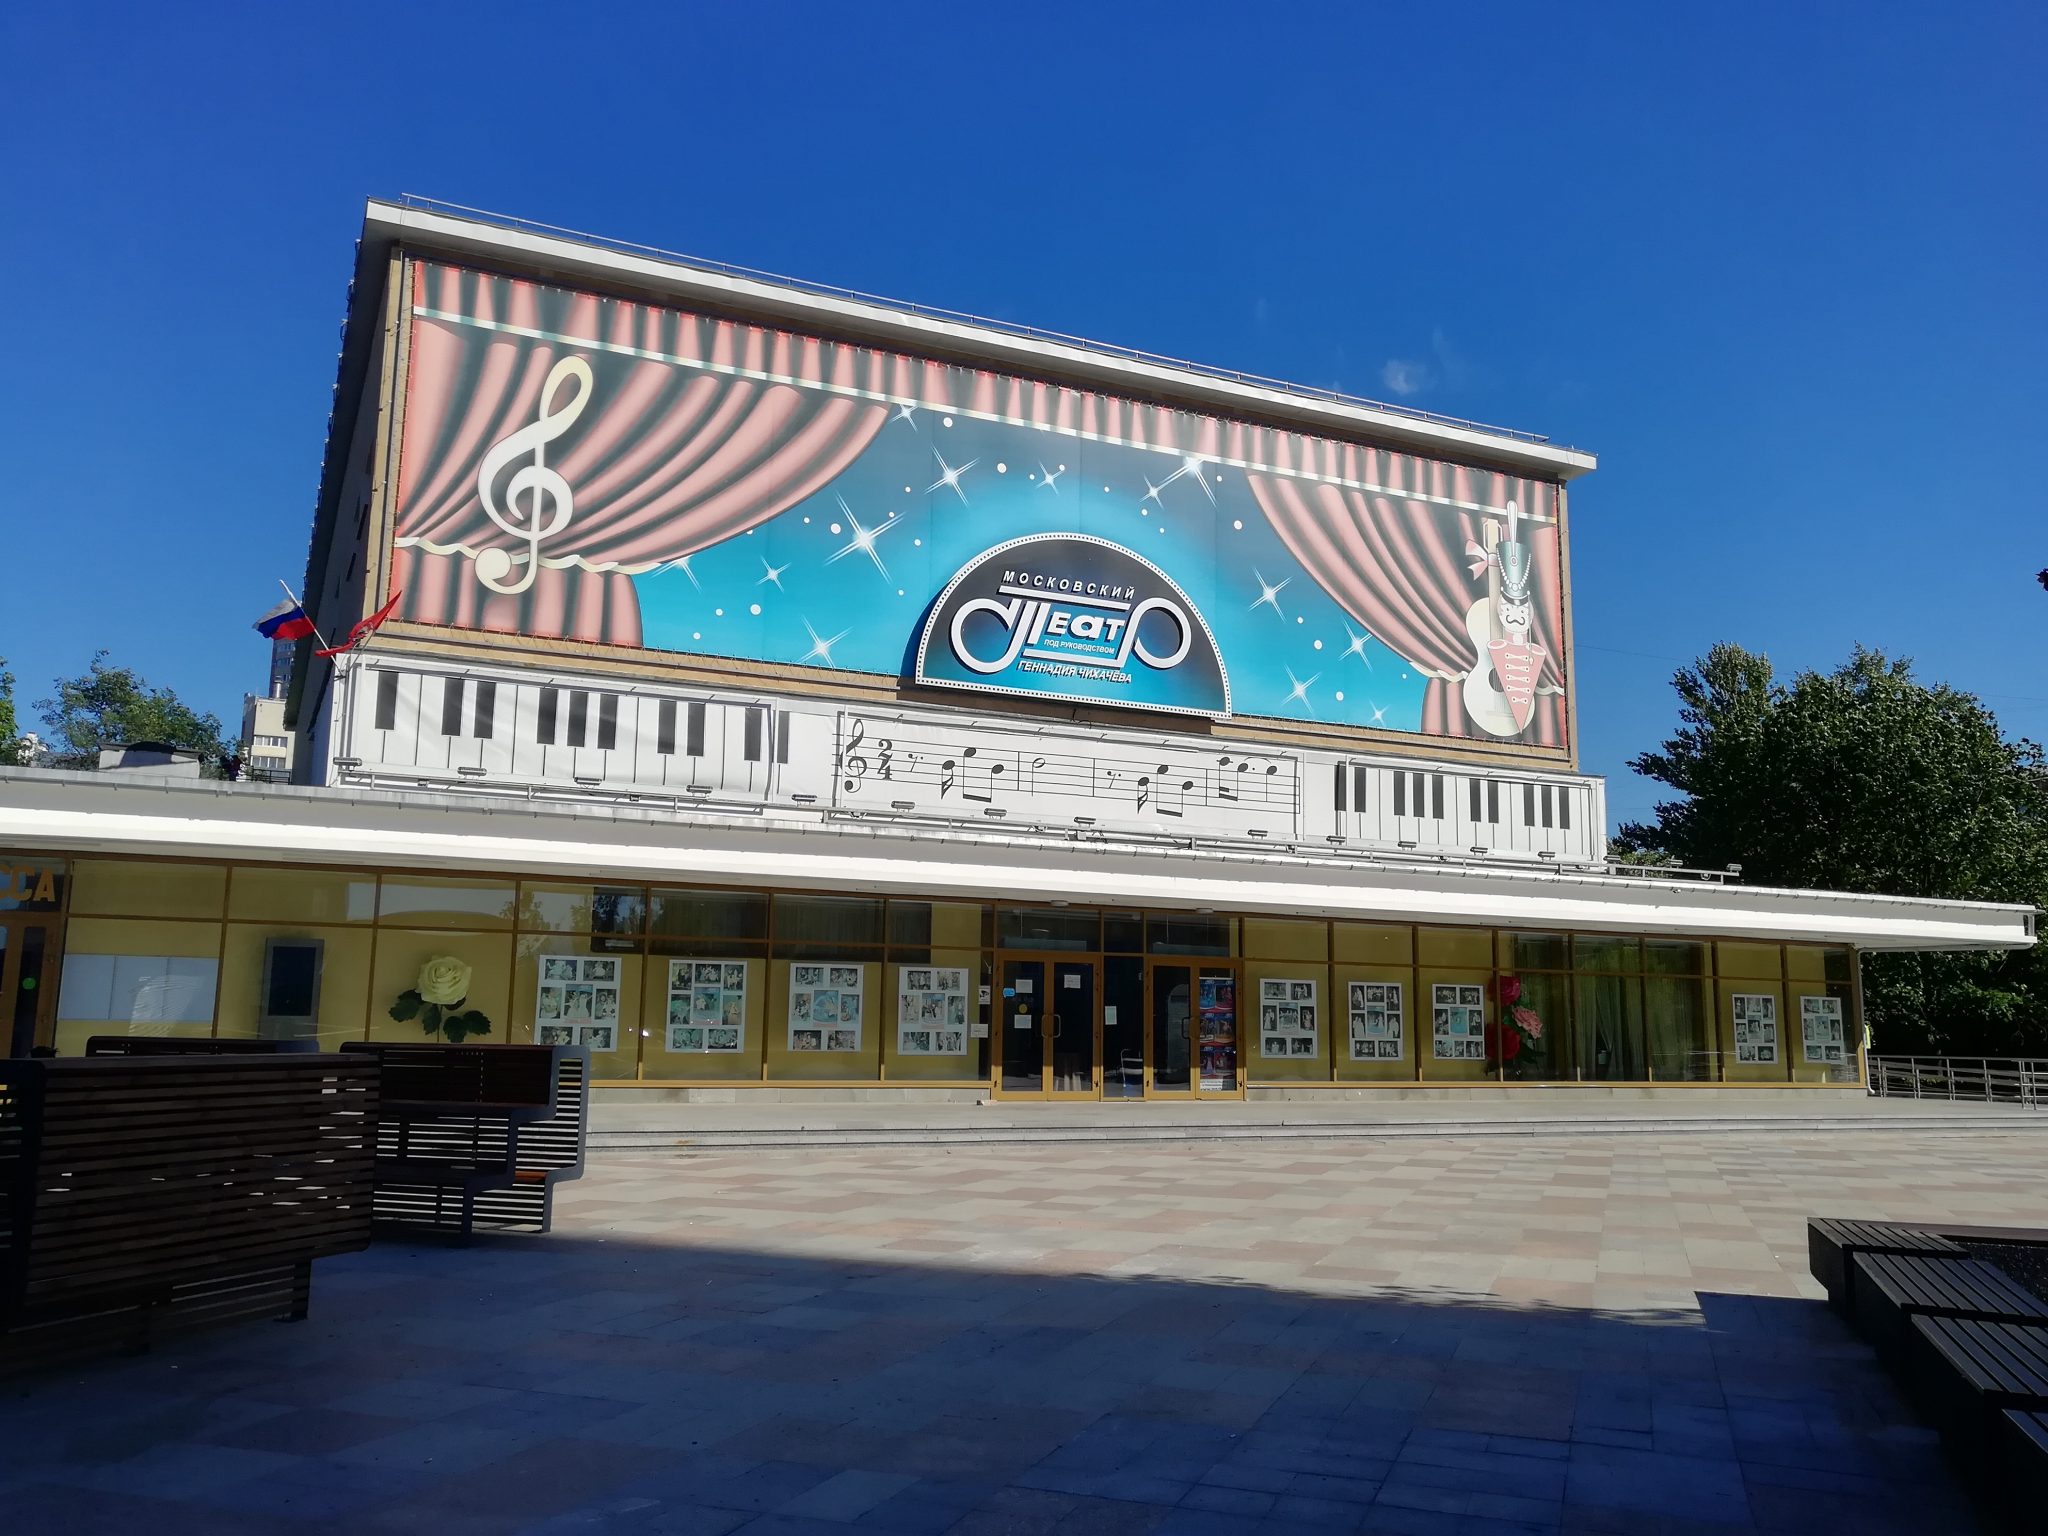 театр чихачева фото большого зала